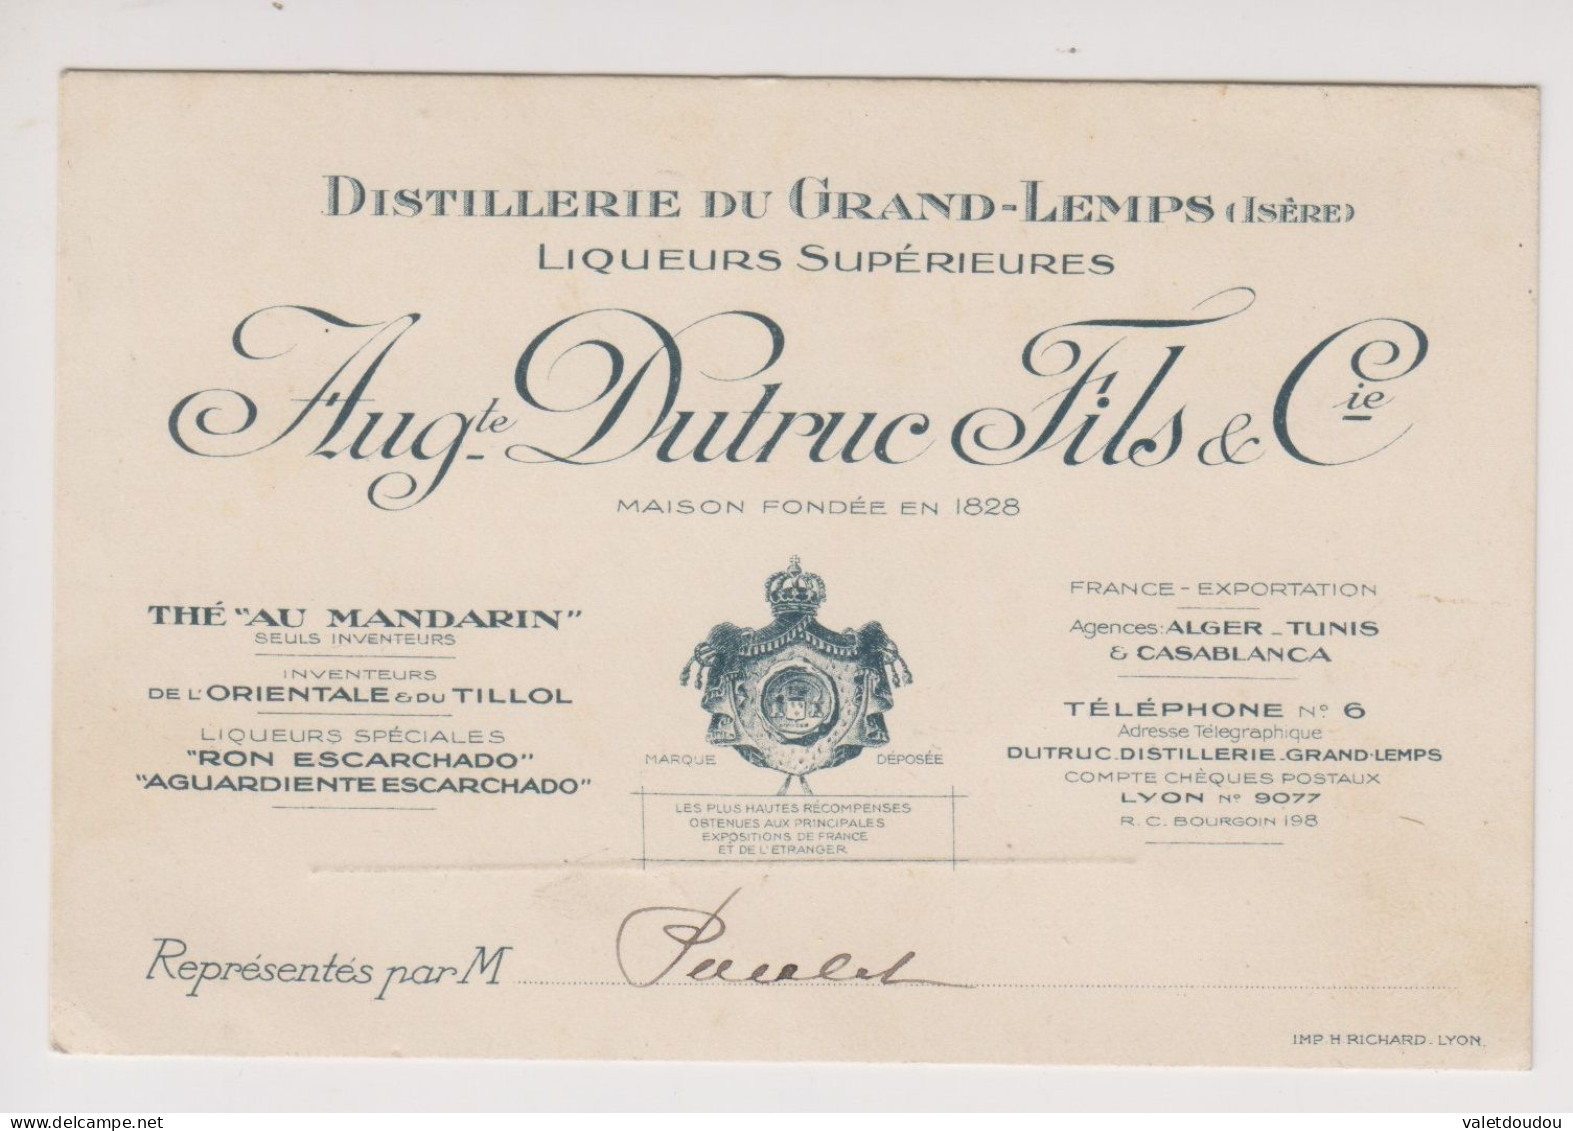 Carte De Visite Auguste Dutruc Fils & Cie .Distillerie Du Grand-Lemps. - Visiting Cards